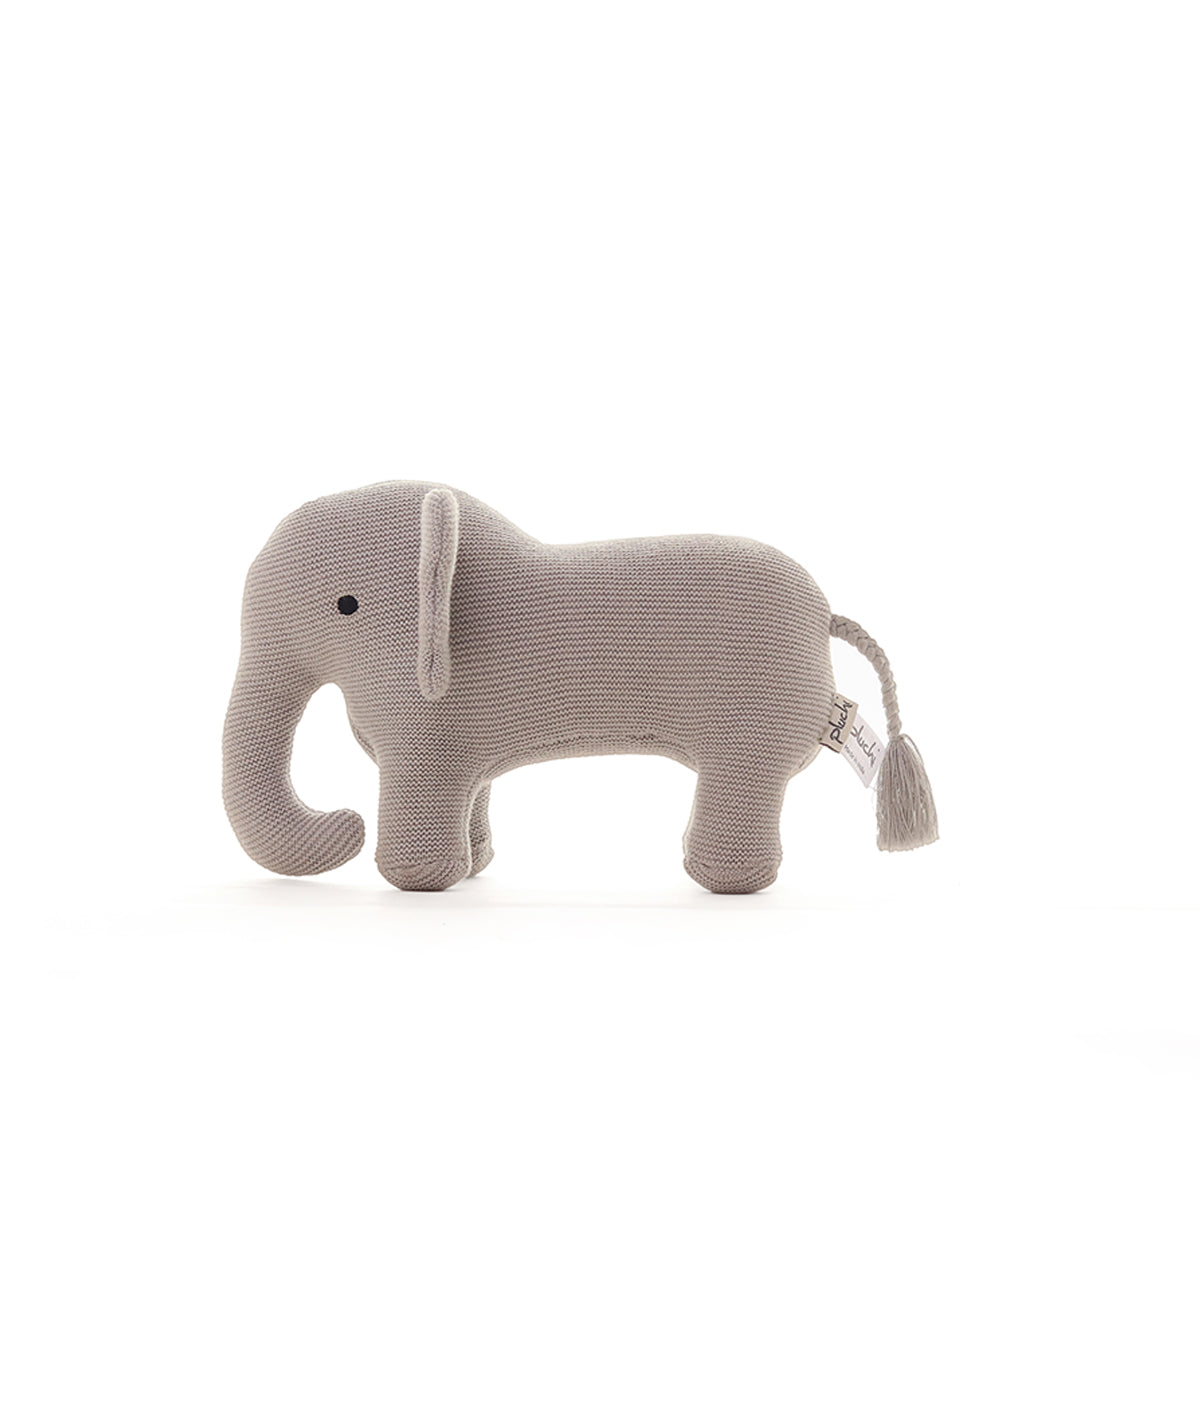 Haku Elephant Cotton Knitted Stuffed Soft Toy (Cool Grey)